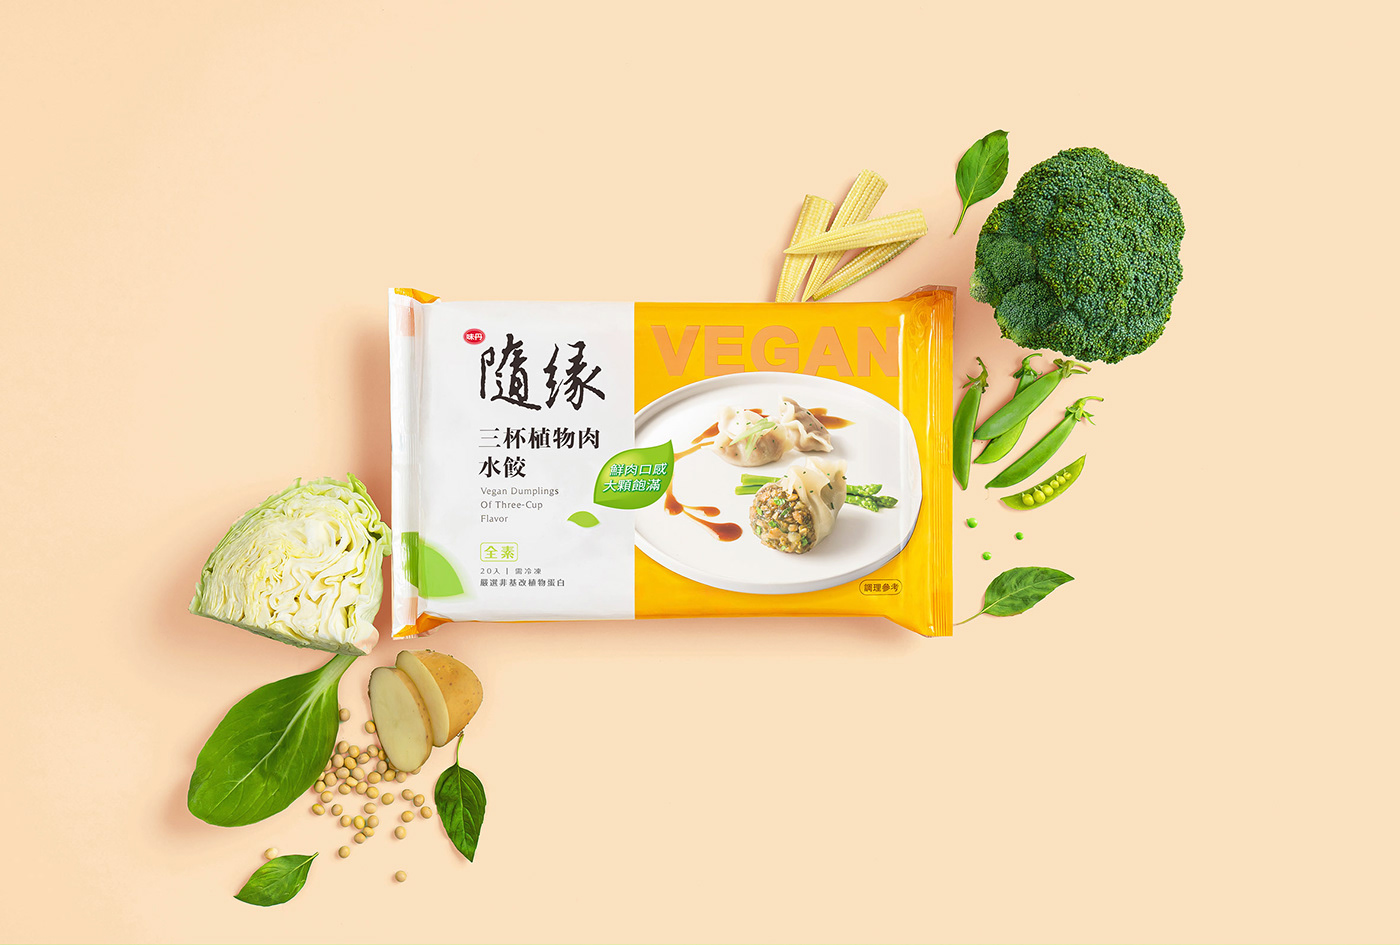 Food  vegan Onebook onebook design ren huang fang Vegan Dumpling Vegan Vedan Suiyuan